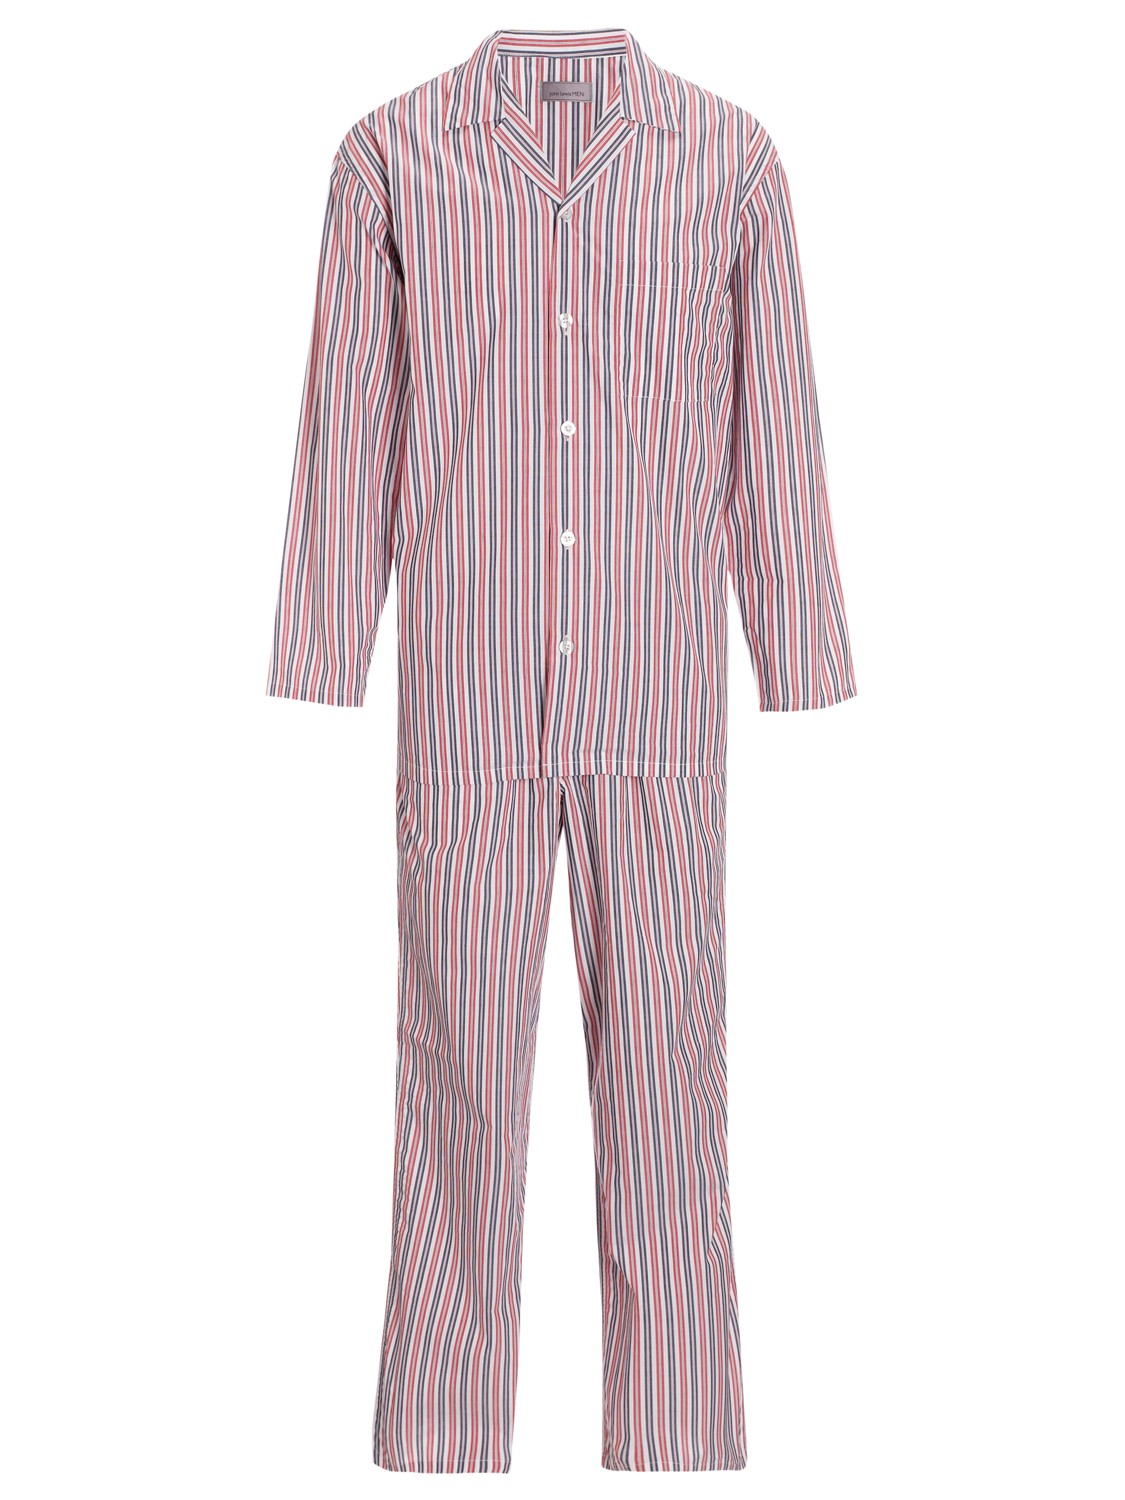 John Lewis John Lewis Woven Striped Pyjamas Red for Men - Lyst